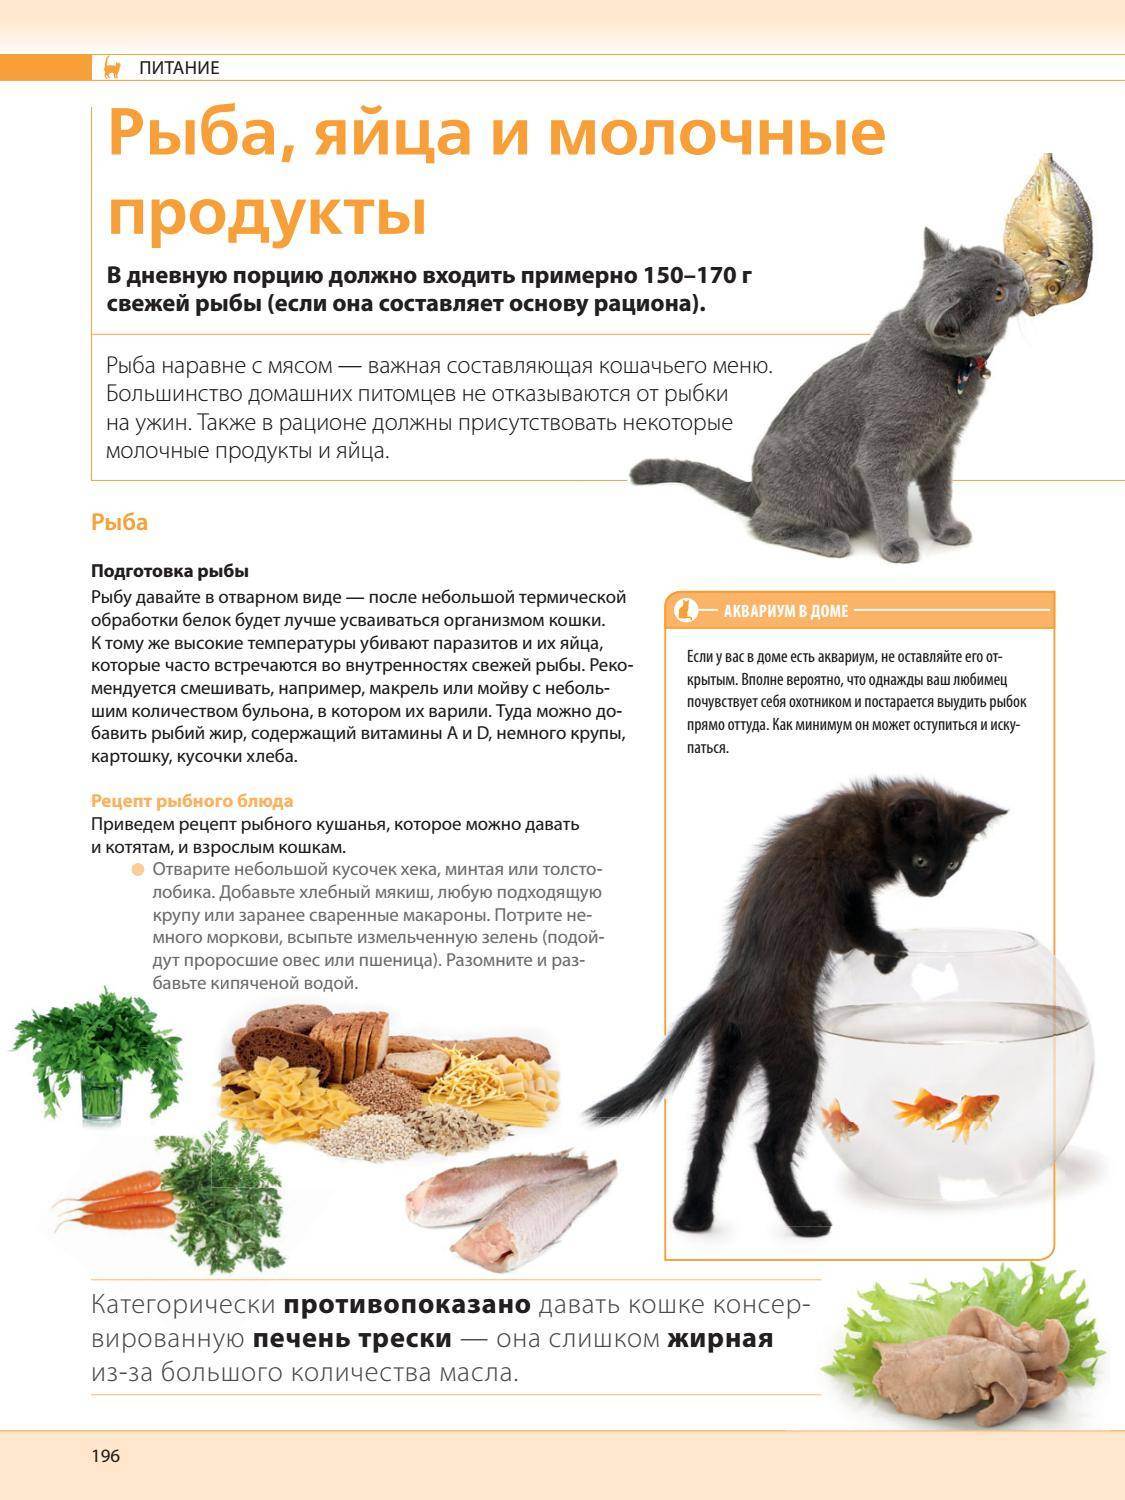 Можно ли кормить кошку сырым мясом? советы по питанию